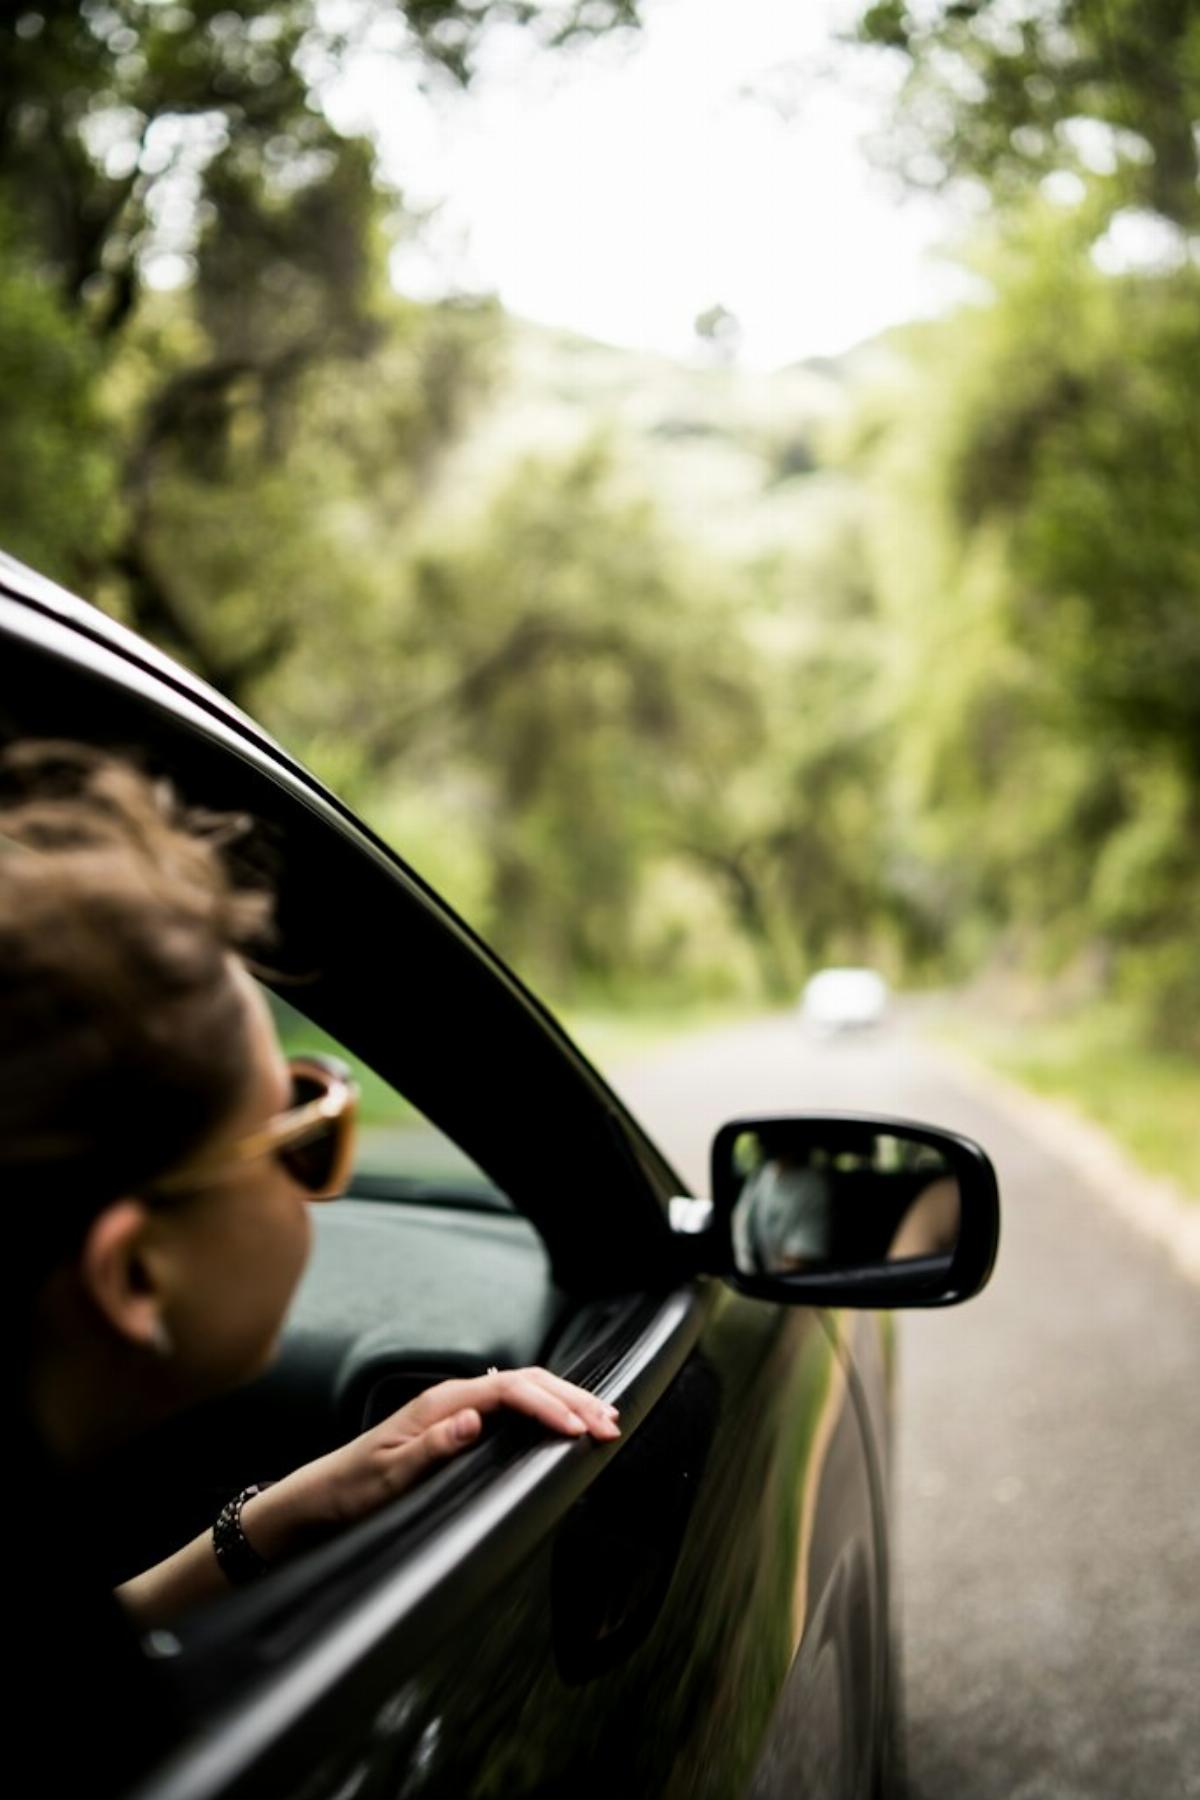 Passager avant d'une voiture qui penche la tête par la fenêtre d'une voiture sur une route au milieu d'un paysage vert